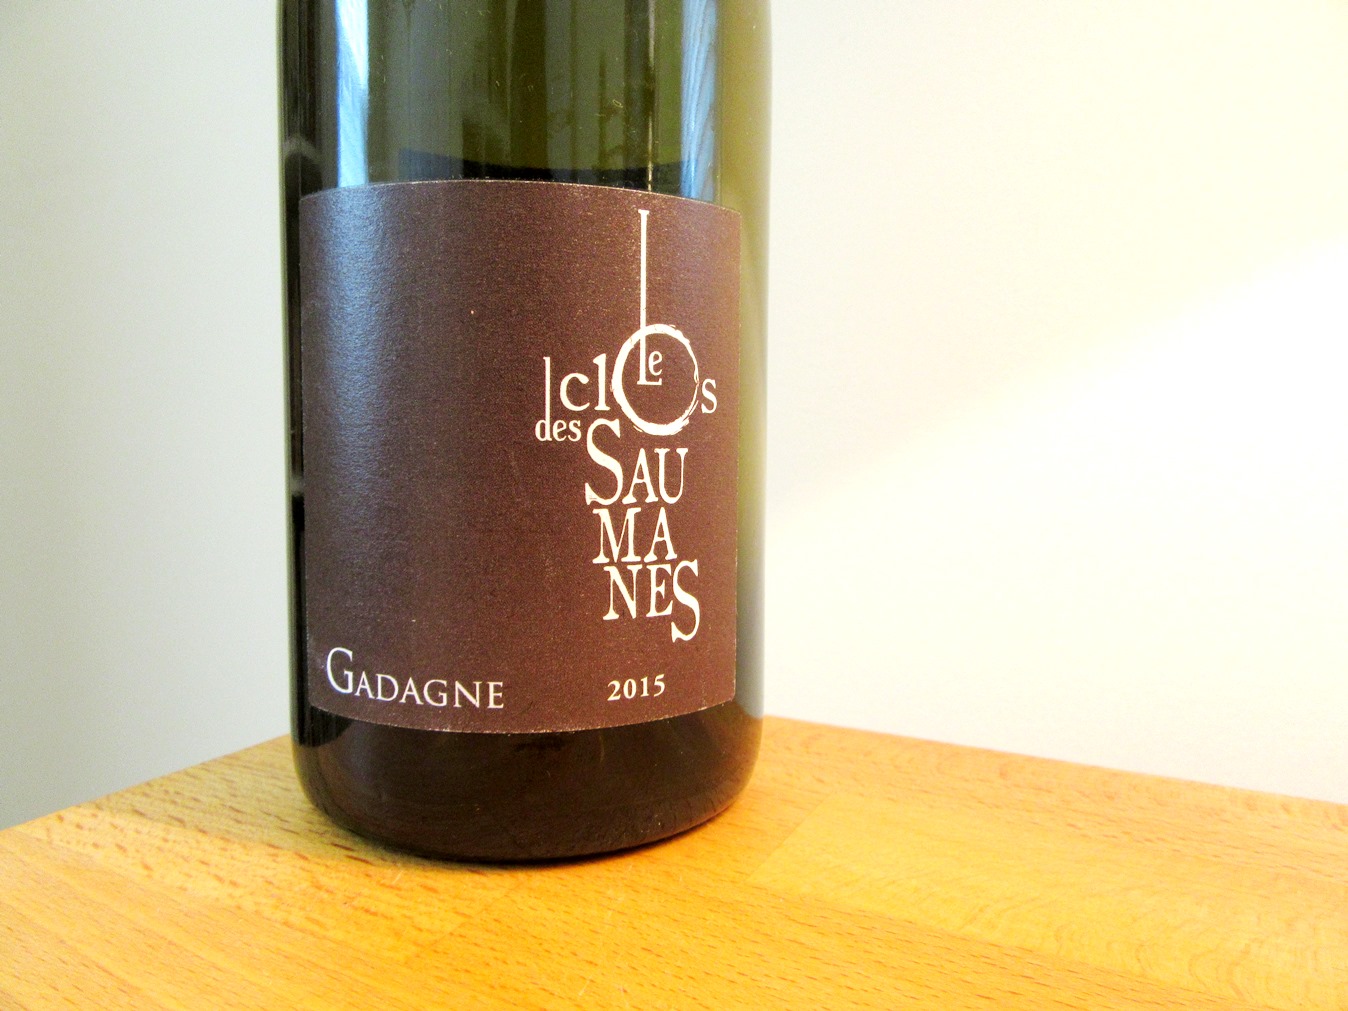 Le Clos Des Saumanes, Côtes du Rhône Villages Gadagne 2015, Rhone, France, Wine Casual